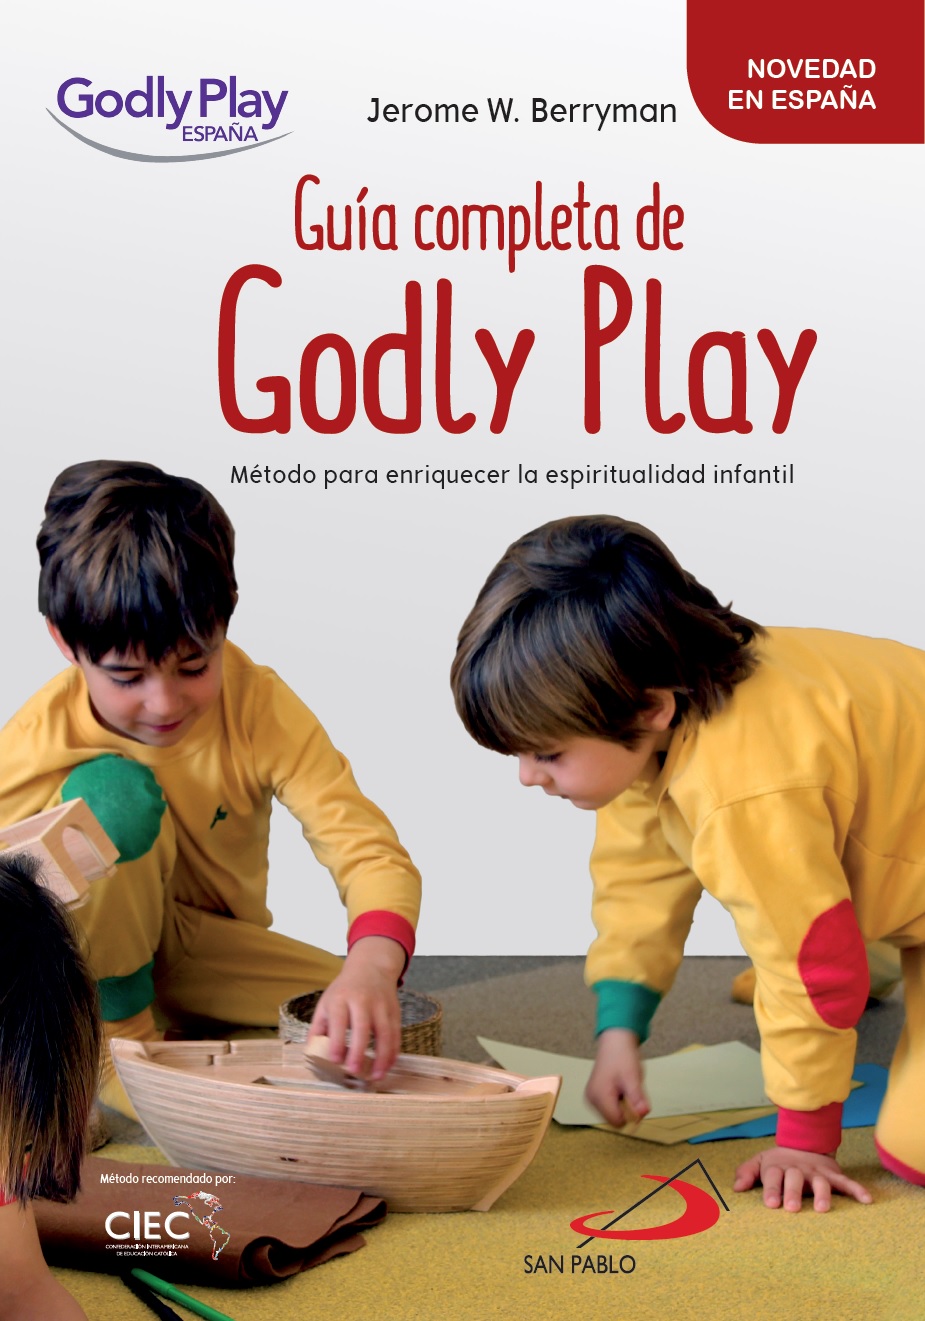 Colección Godly Play de la editorial San Pablo